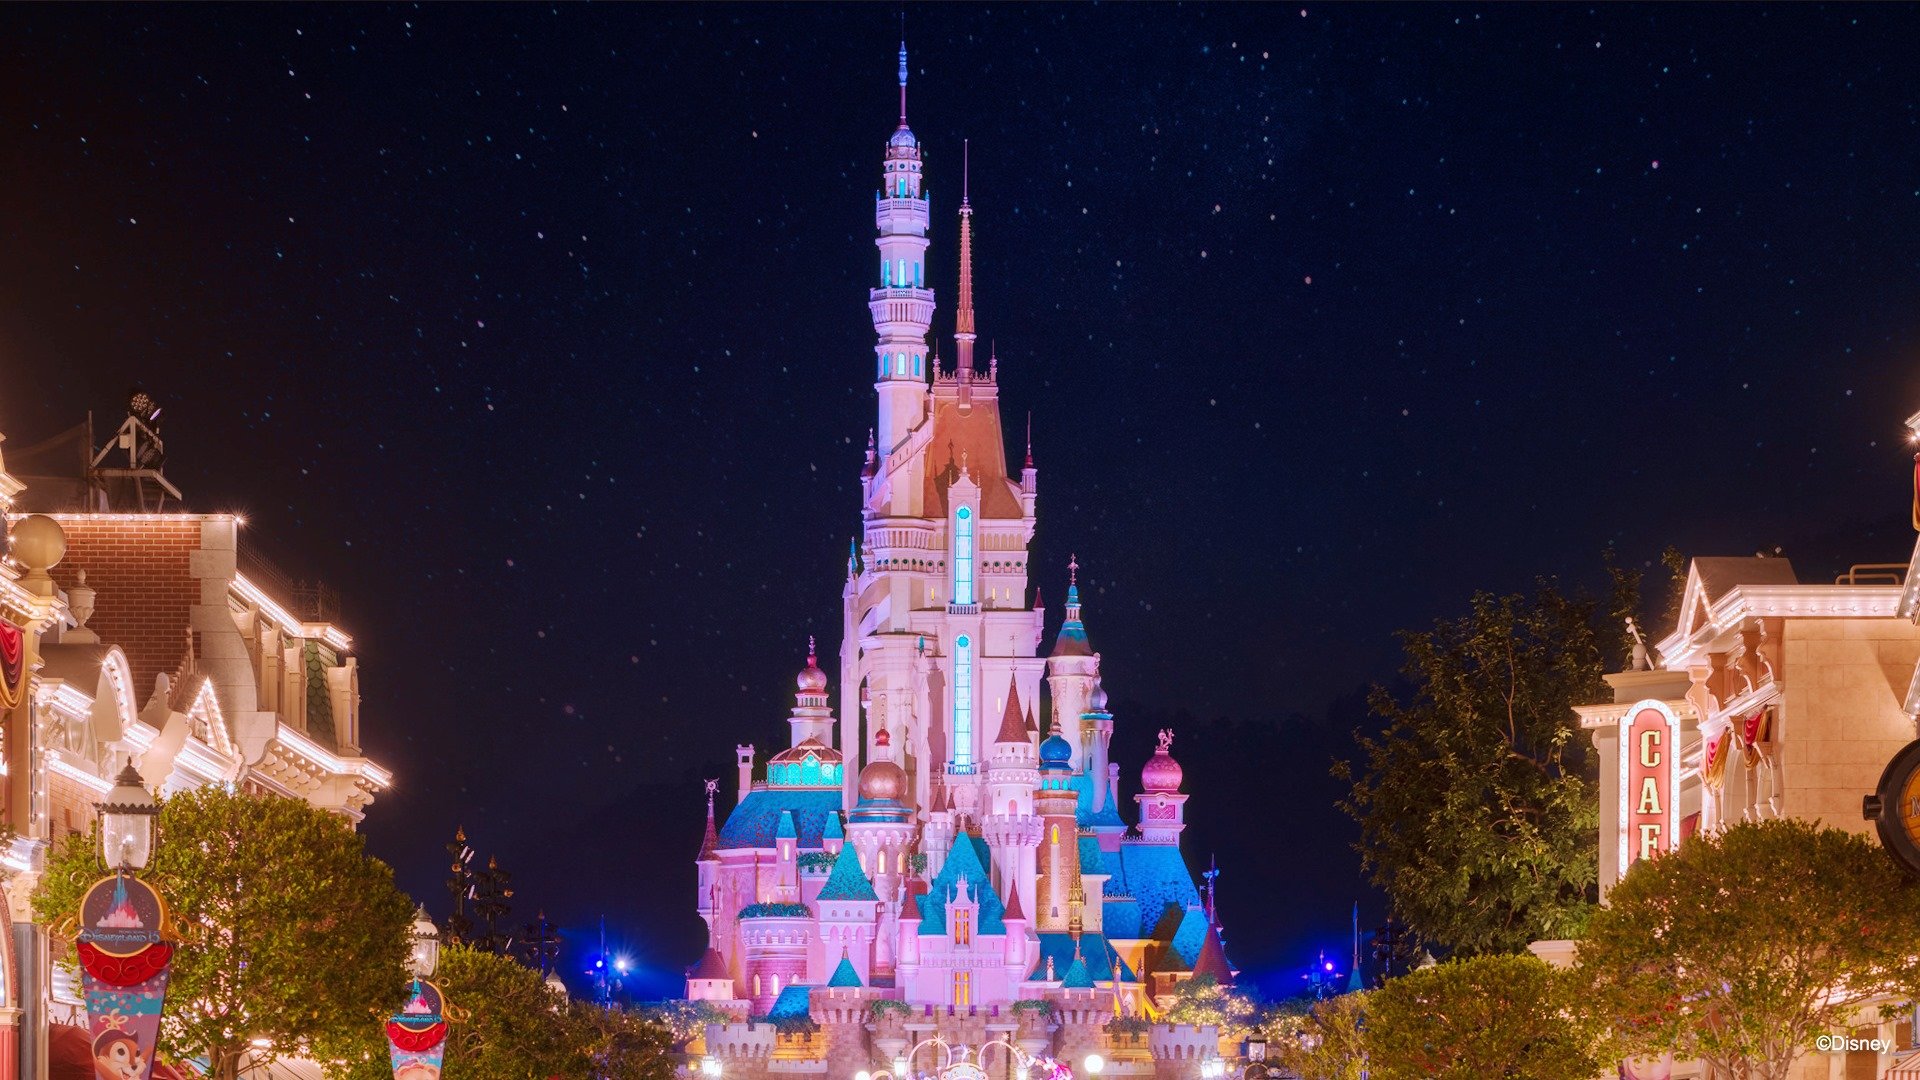 迪士尼城堡夜景高清,迪士尼城堡烟花高清 - 伤感说说吧